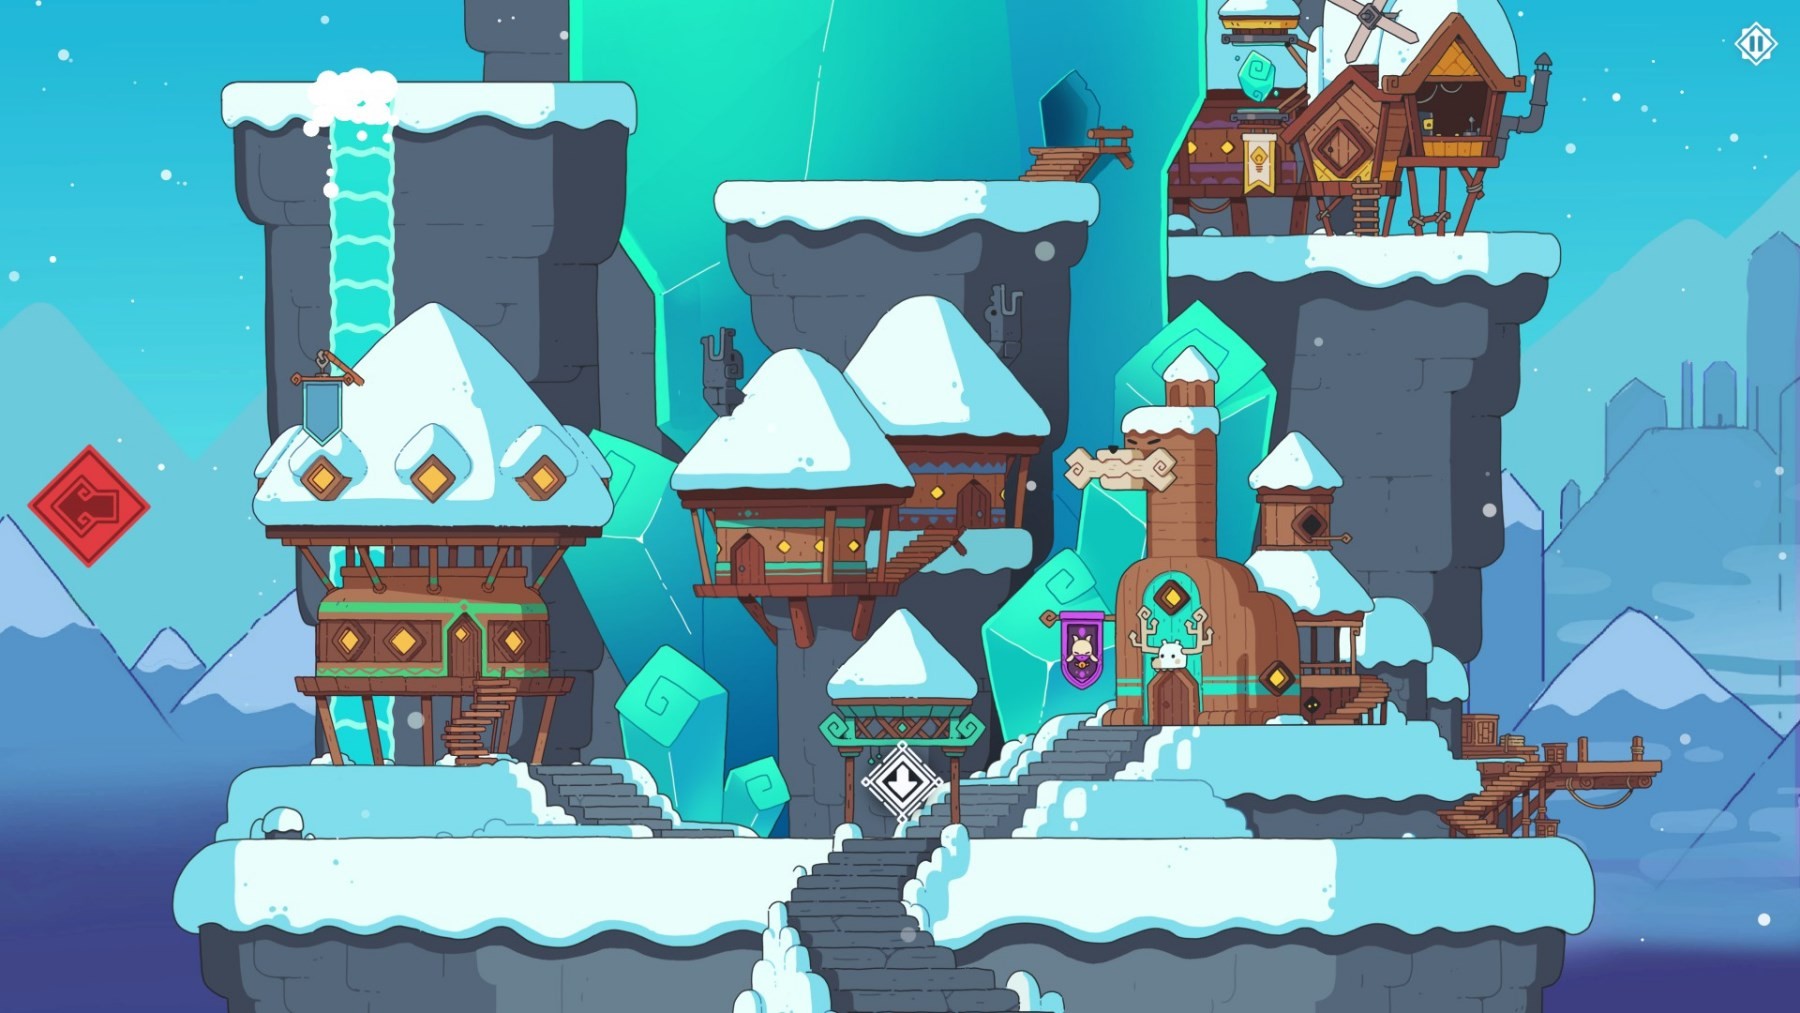 《雪居之地》背景設定及玩法簡析 雪居之地好玩嗎